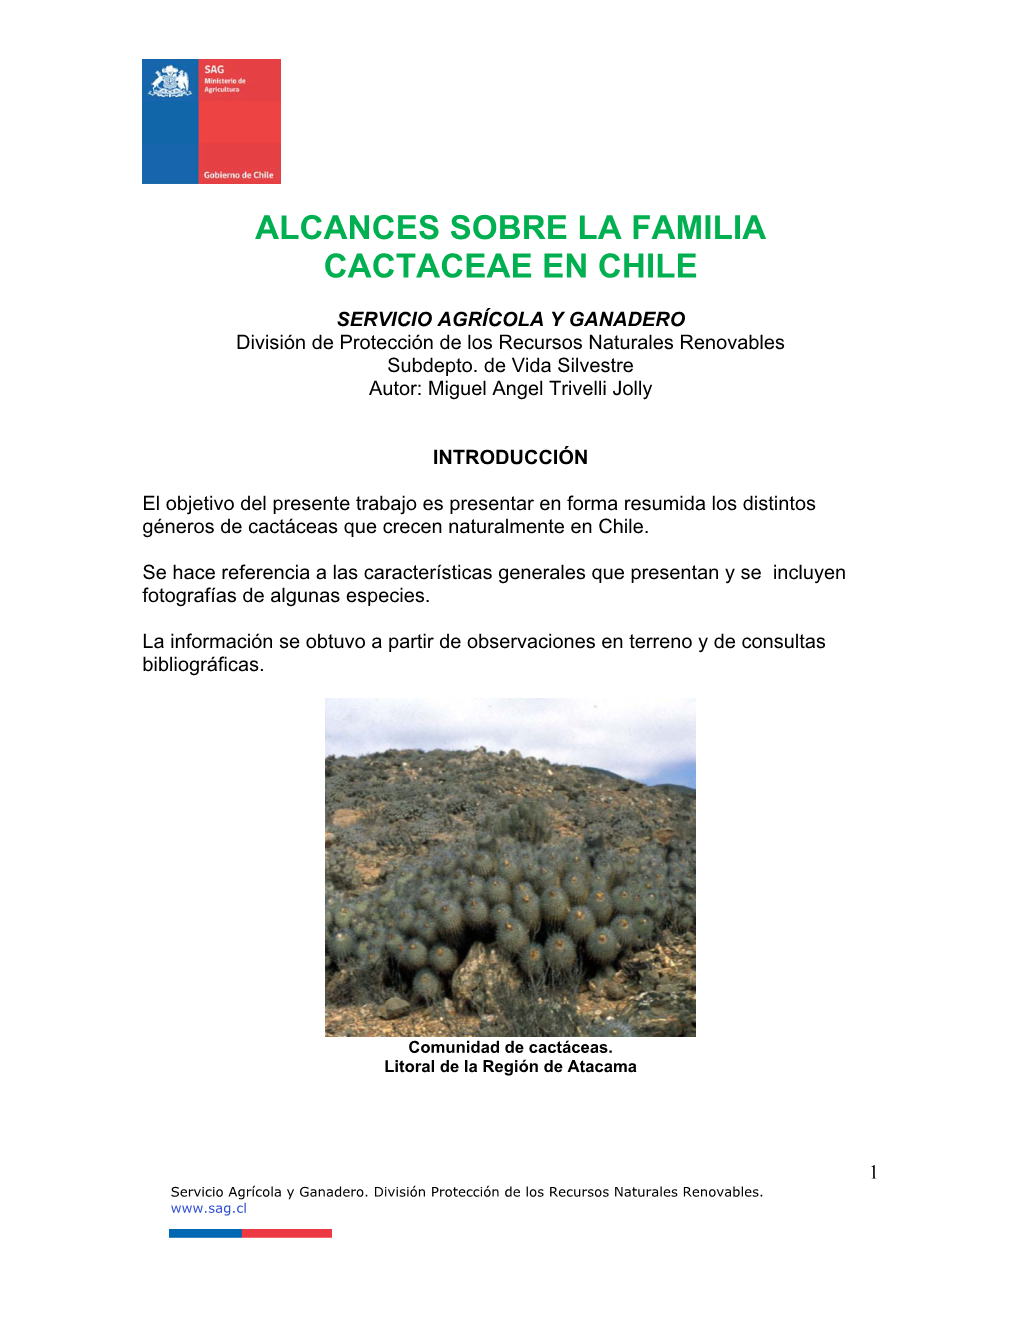 Alcances Sobre La Familia Cactaceae En Chile